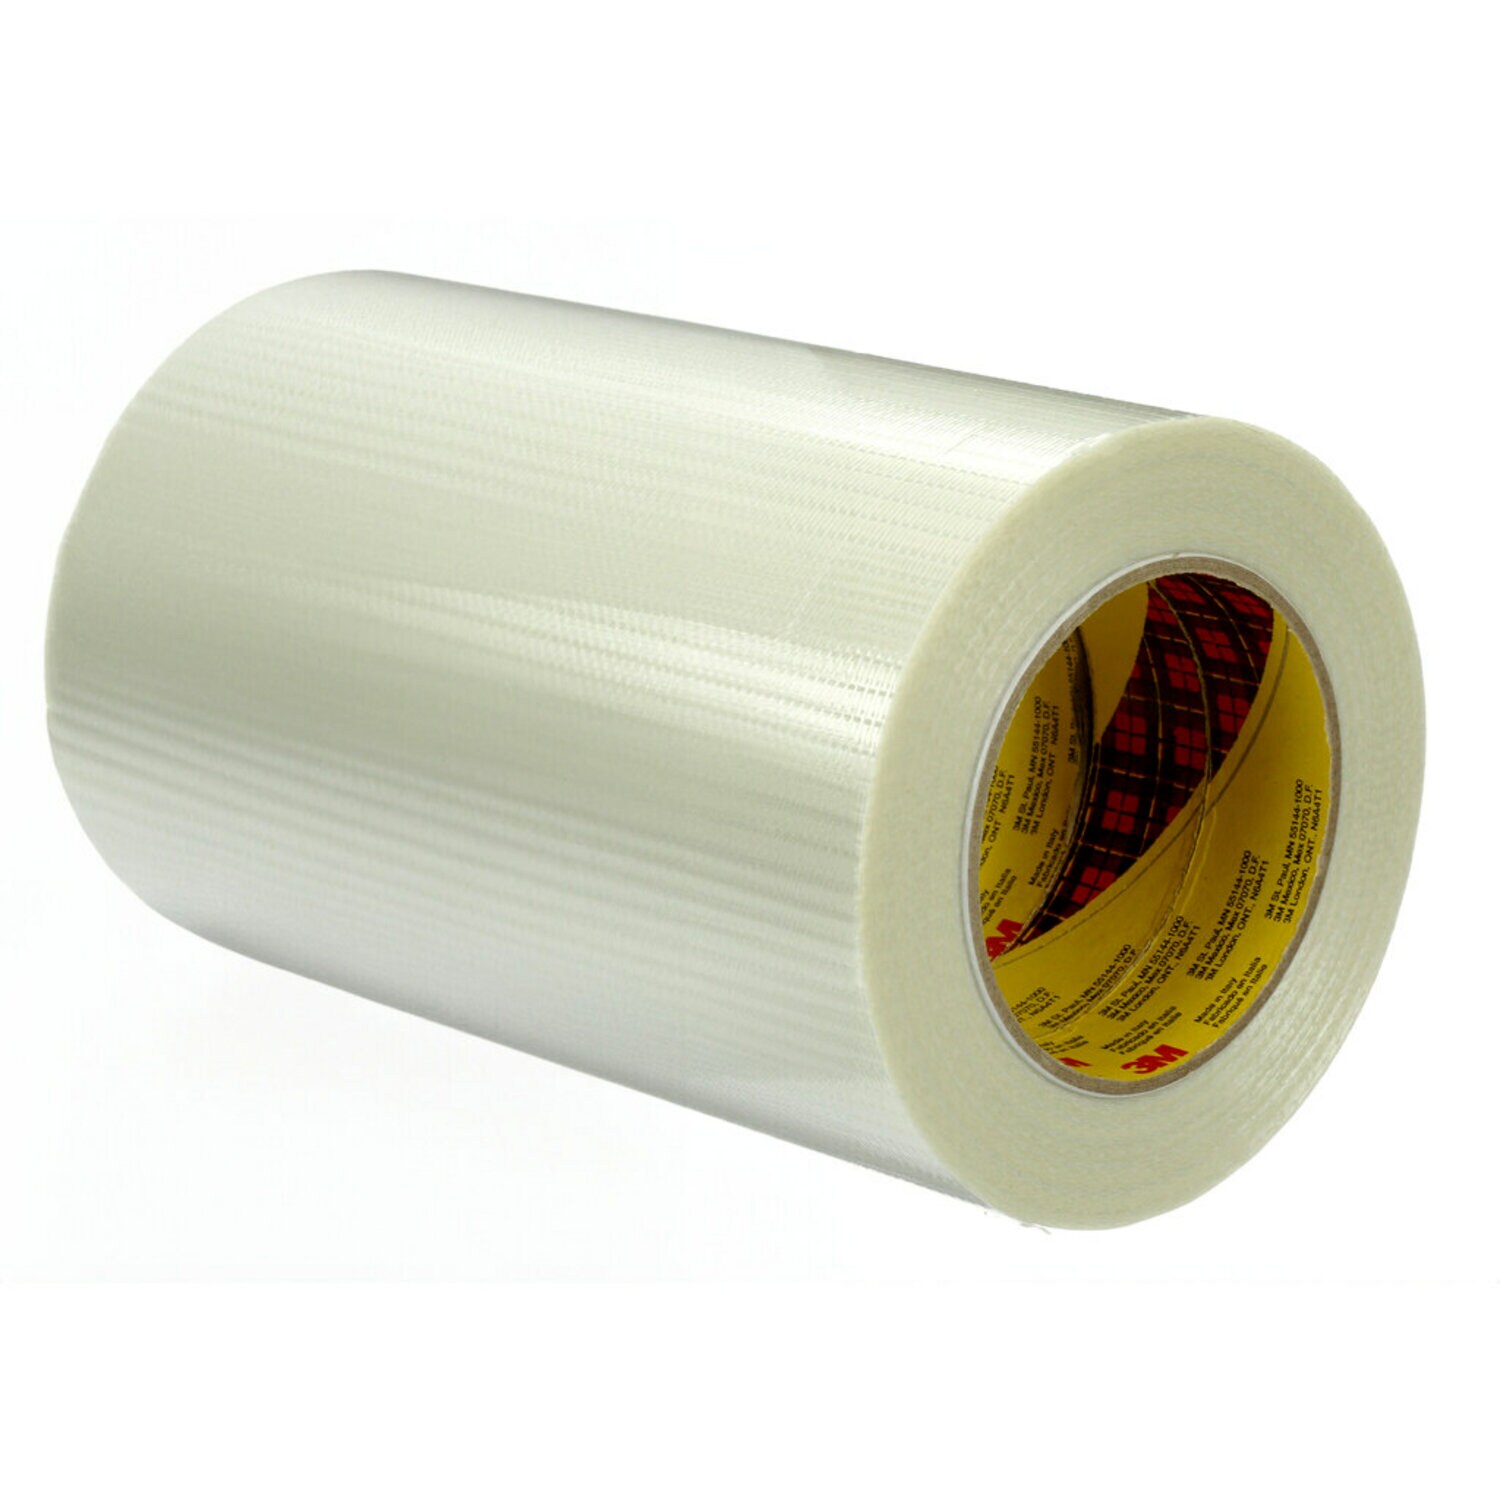 7000137596 - Scotch Bi-Directional Filament Tape 8959, Transparent, 6 in x 60 yd,
8 Rolls/Case